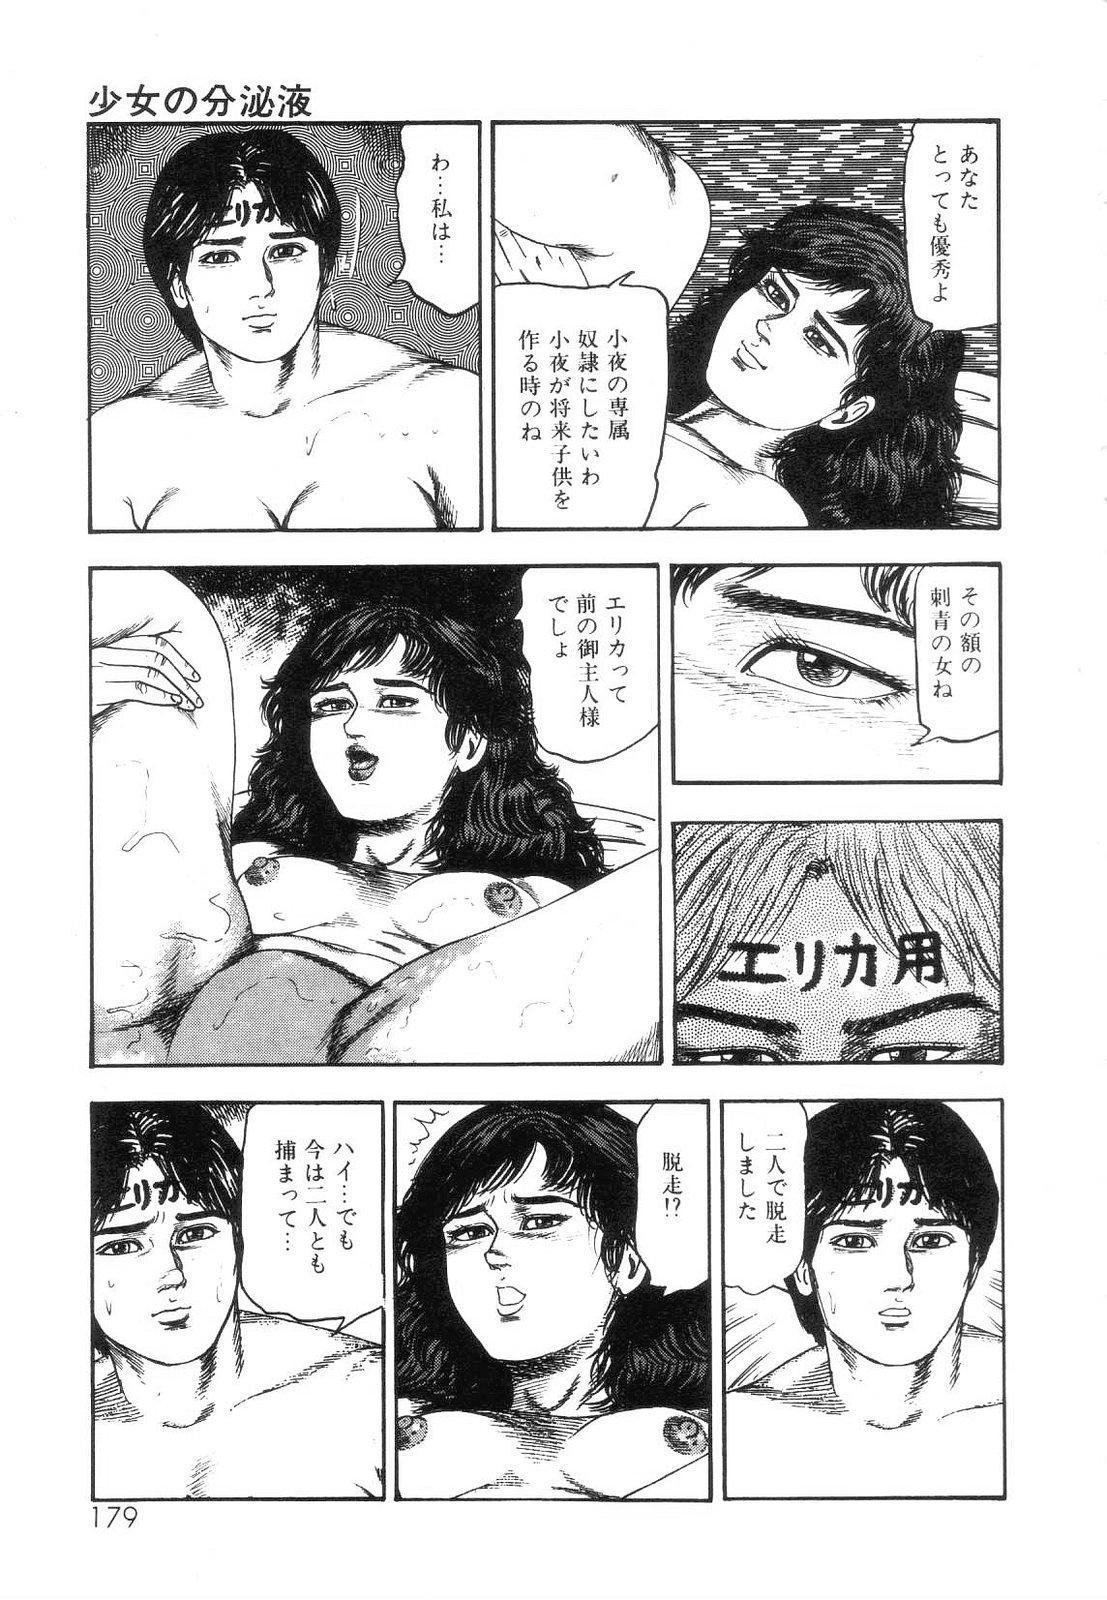 Shiro no Mokushiroku Vol. 5 - Ninshoujo Erika no Shou 180